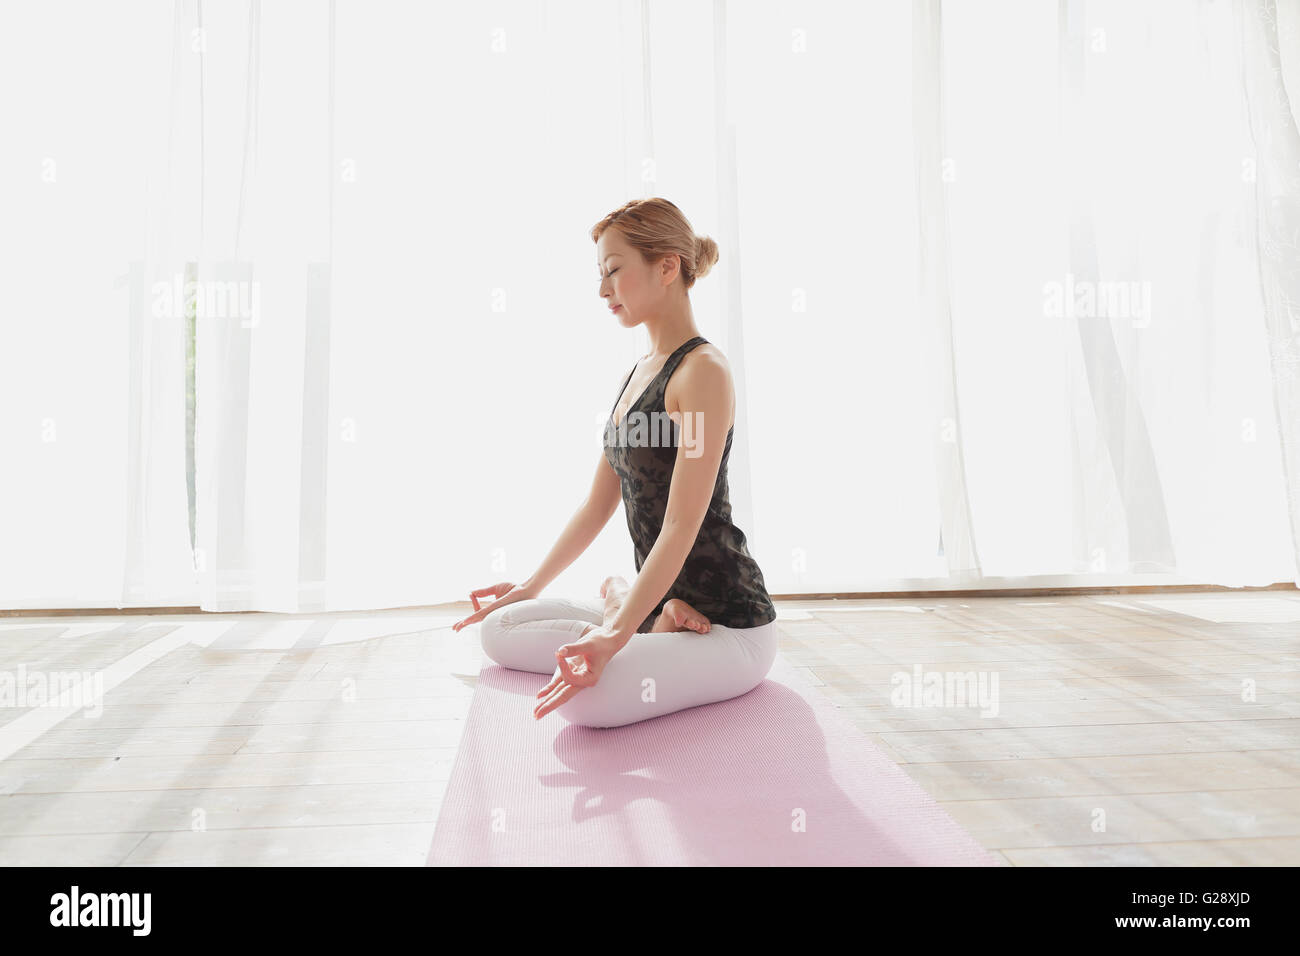 Les jeunes Japonais attrayante la pratique du yoga dans une salle aérée Banque D'Images